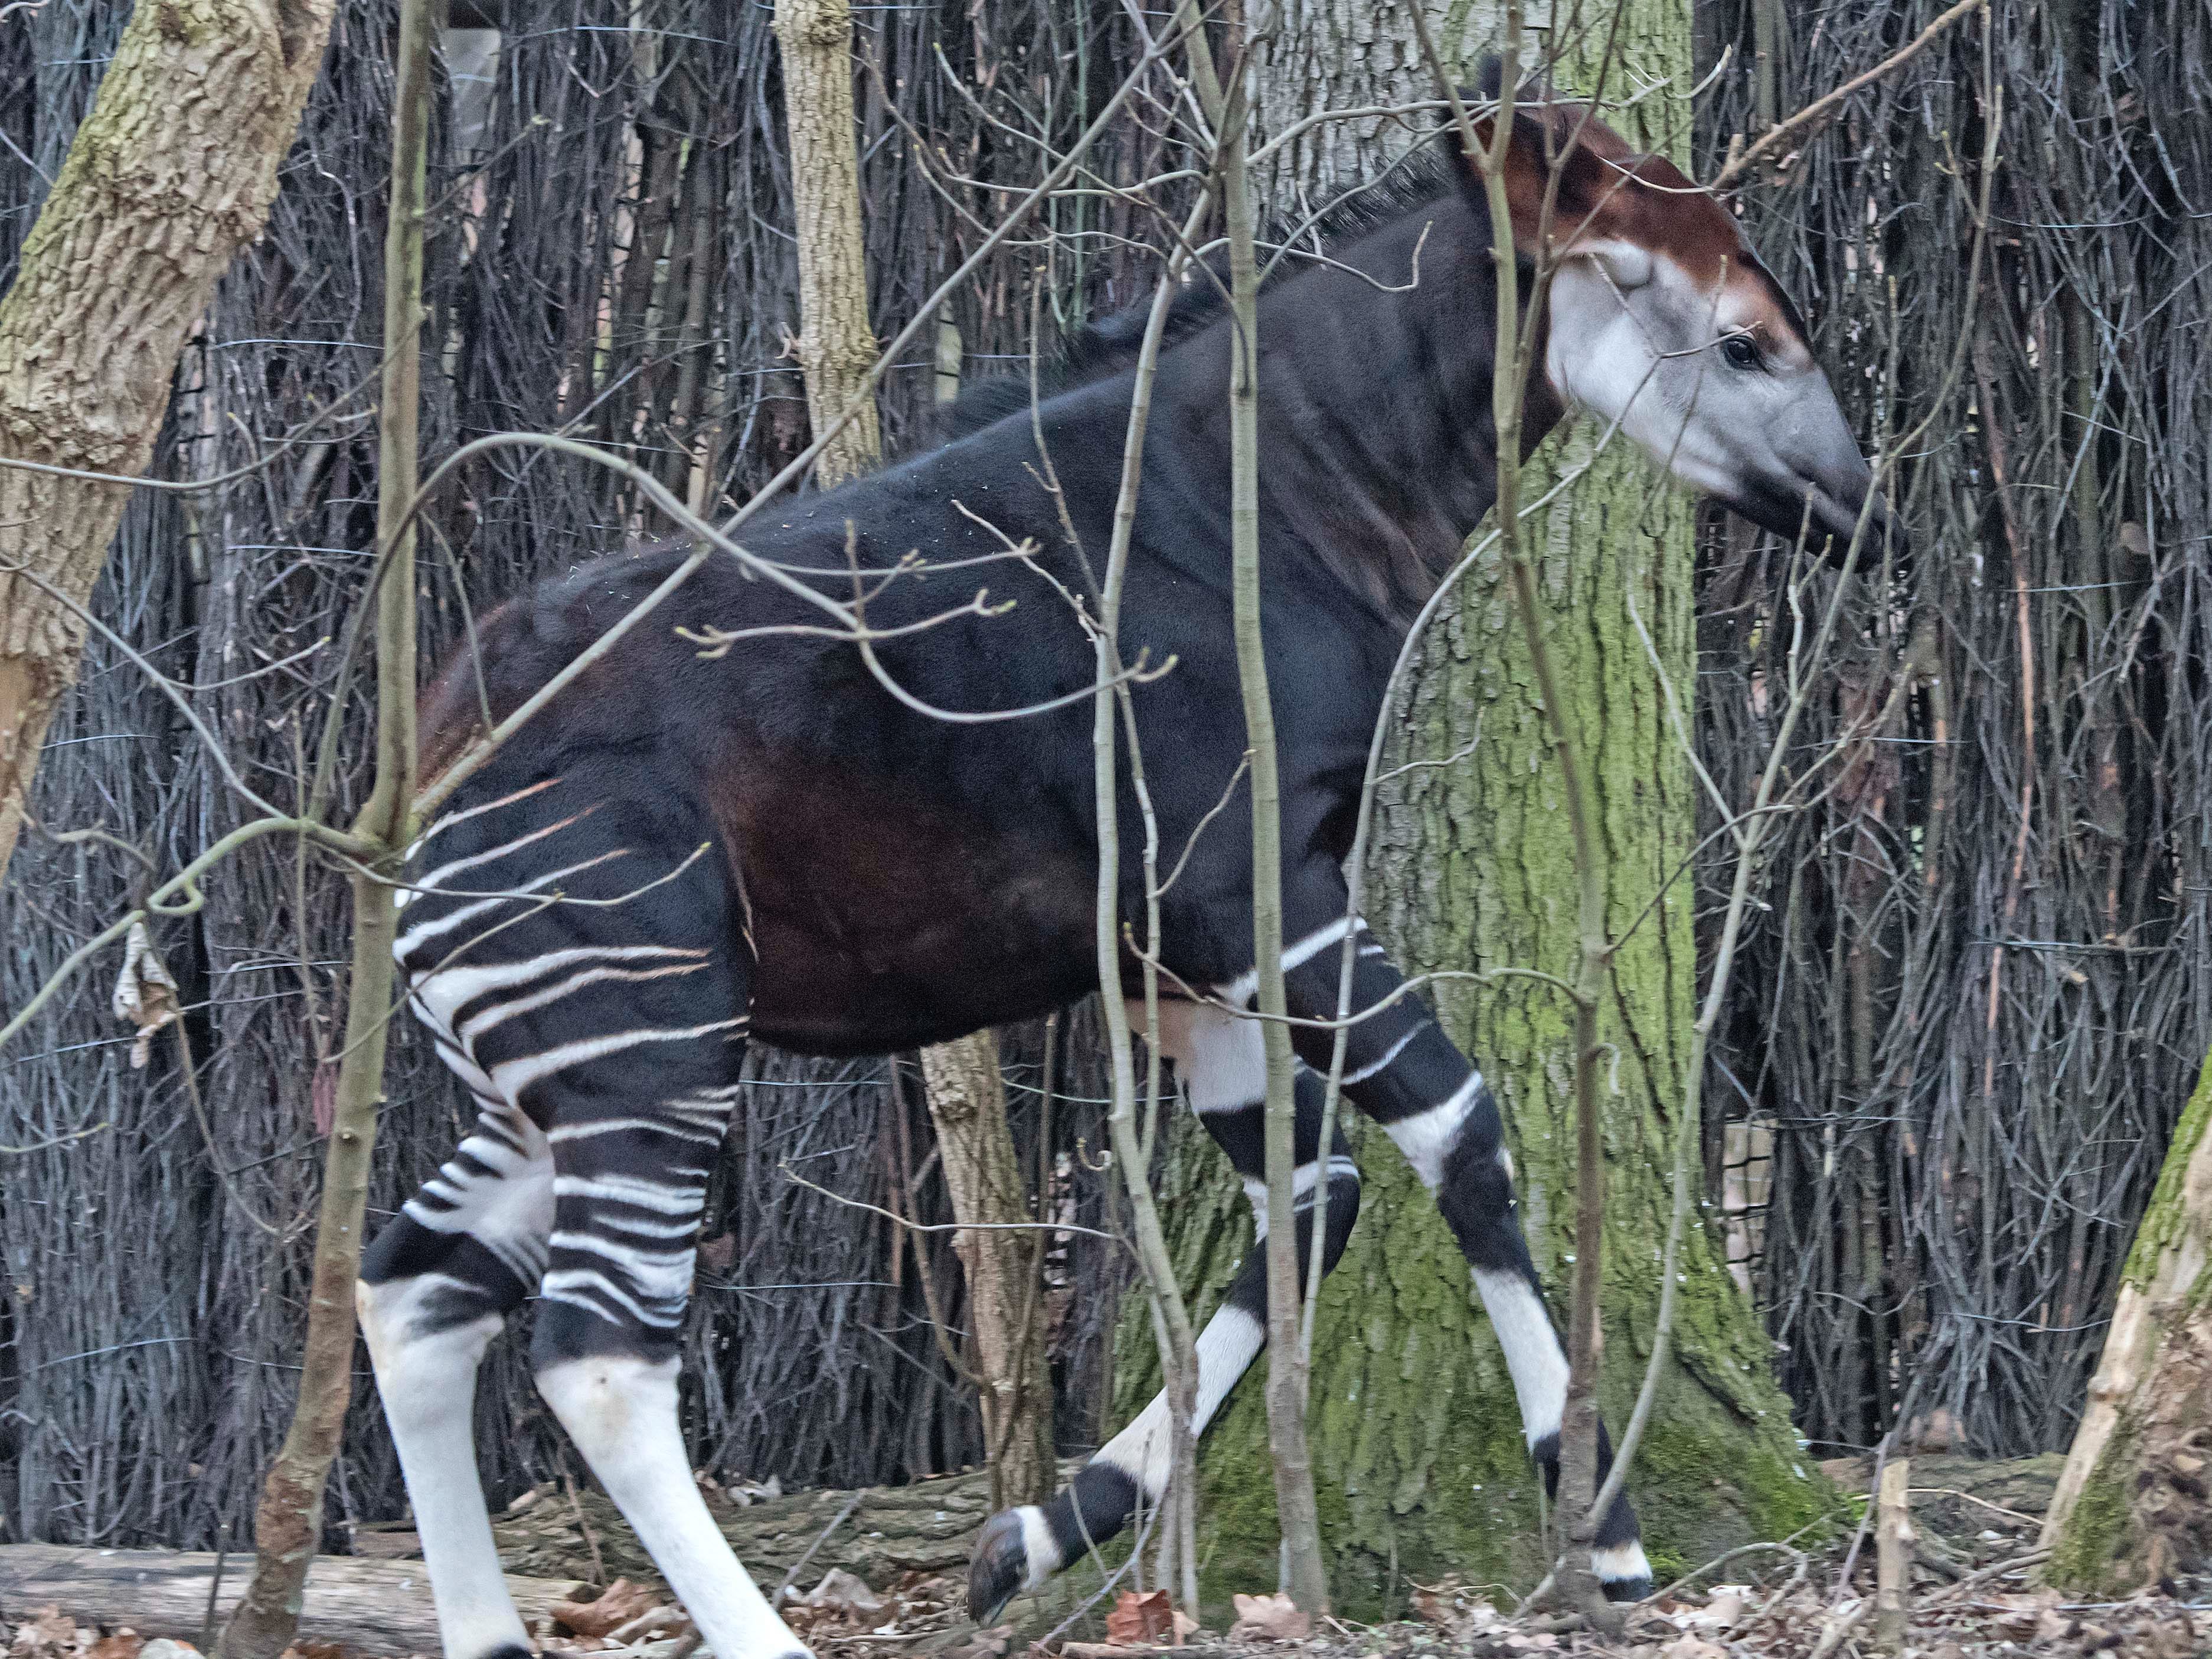 Ein schwarzes Okapi mit zebraähnlichen Streifen auf den Beinen rennt durch den Wald